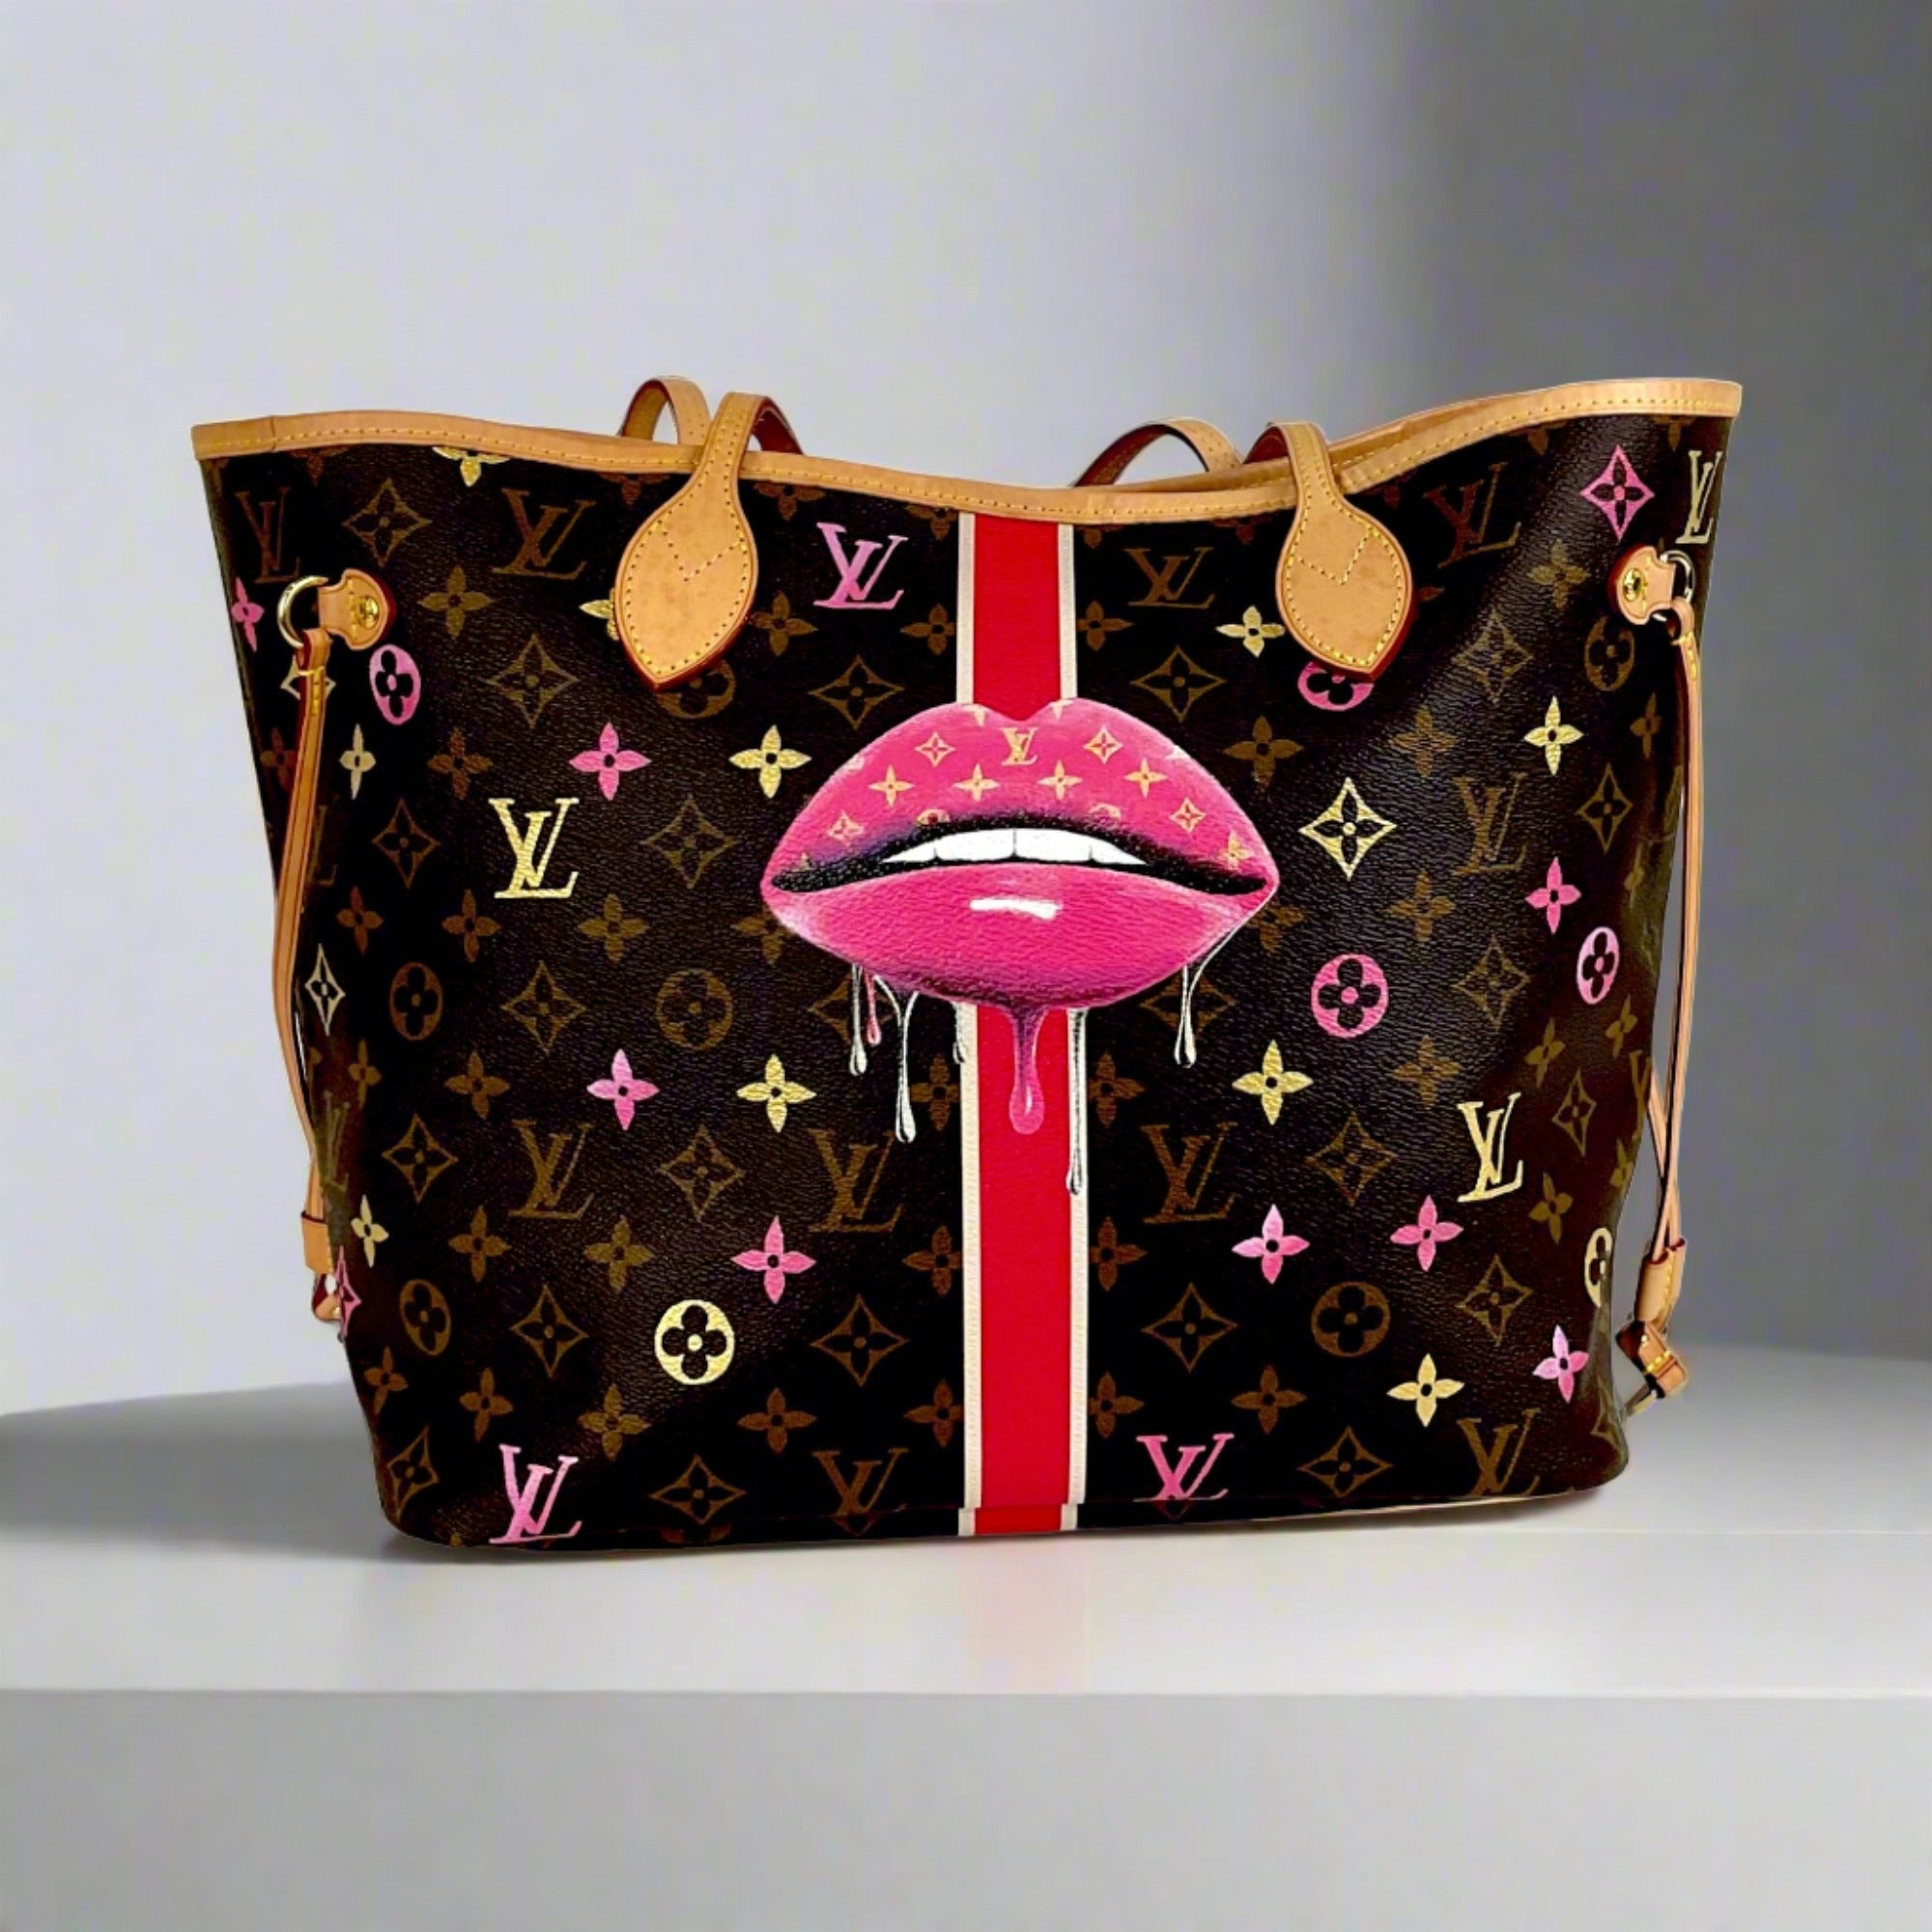 Louis Vuitton Handbag  Buy / Sell your LV Purse, Crossbody bag